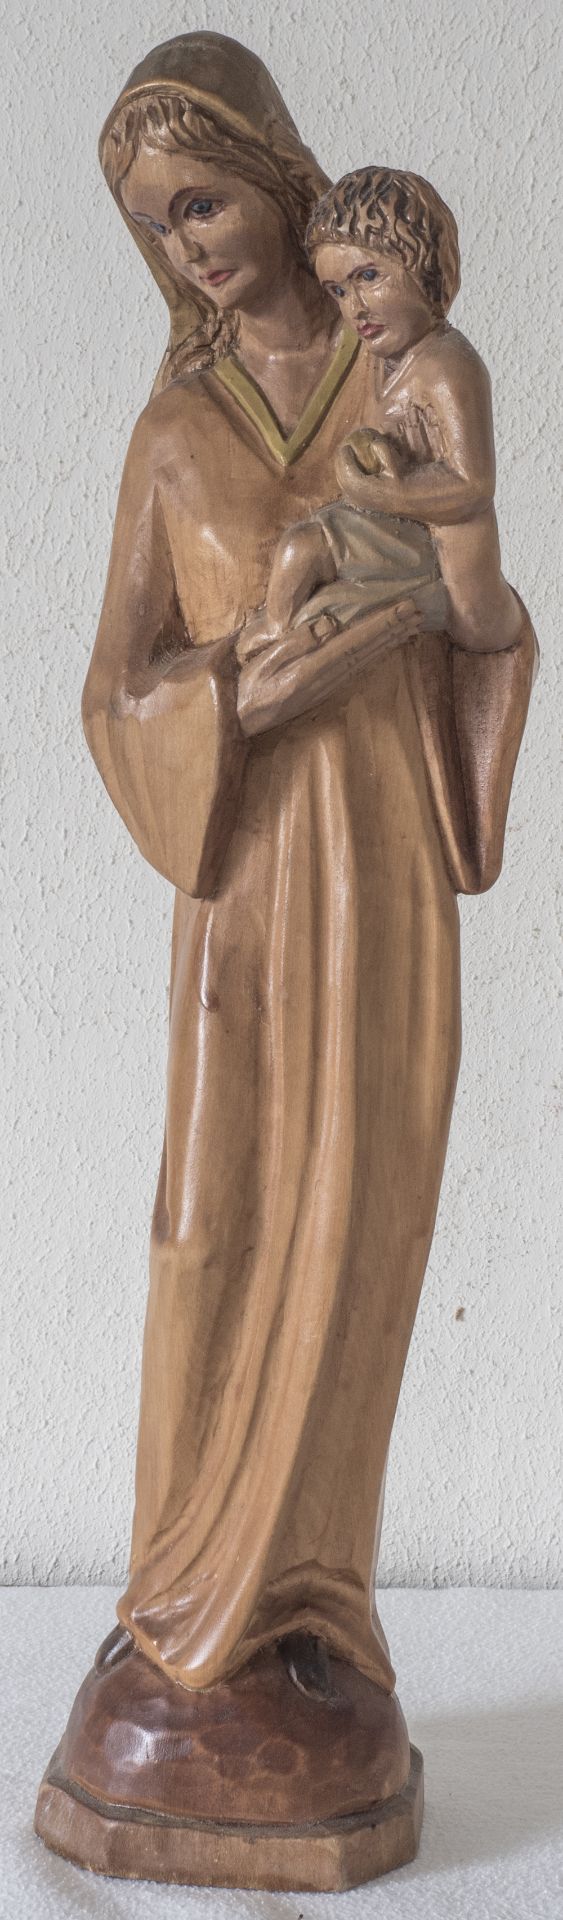 Holzfigur "Madonna", handgeschnitzt, mehrfarbig gebeizt, Höhe: ca. 40 cm.